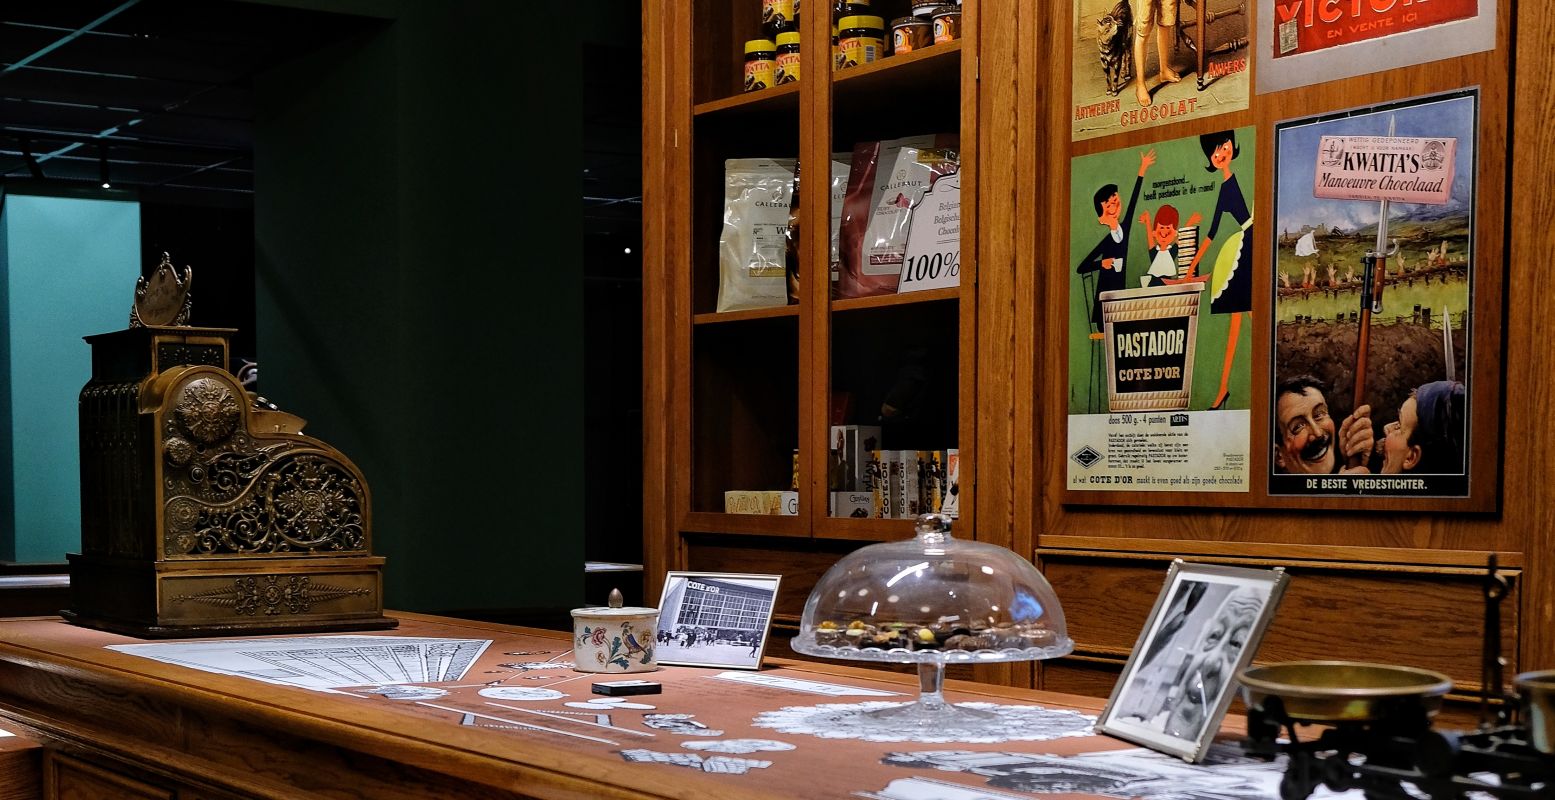 Je loopt bij Chocolate Nation door veel bijzondere plekken, zoals dit historische winkeltje. Foto: Marjorie Romeijn